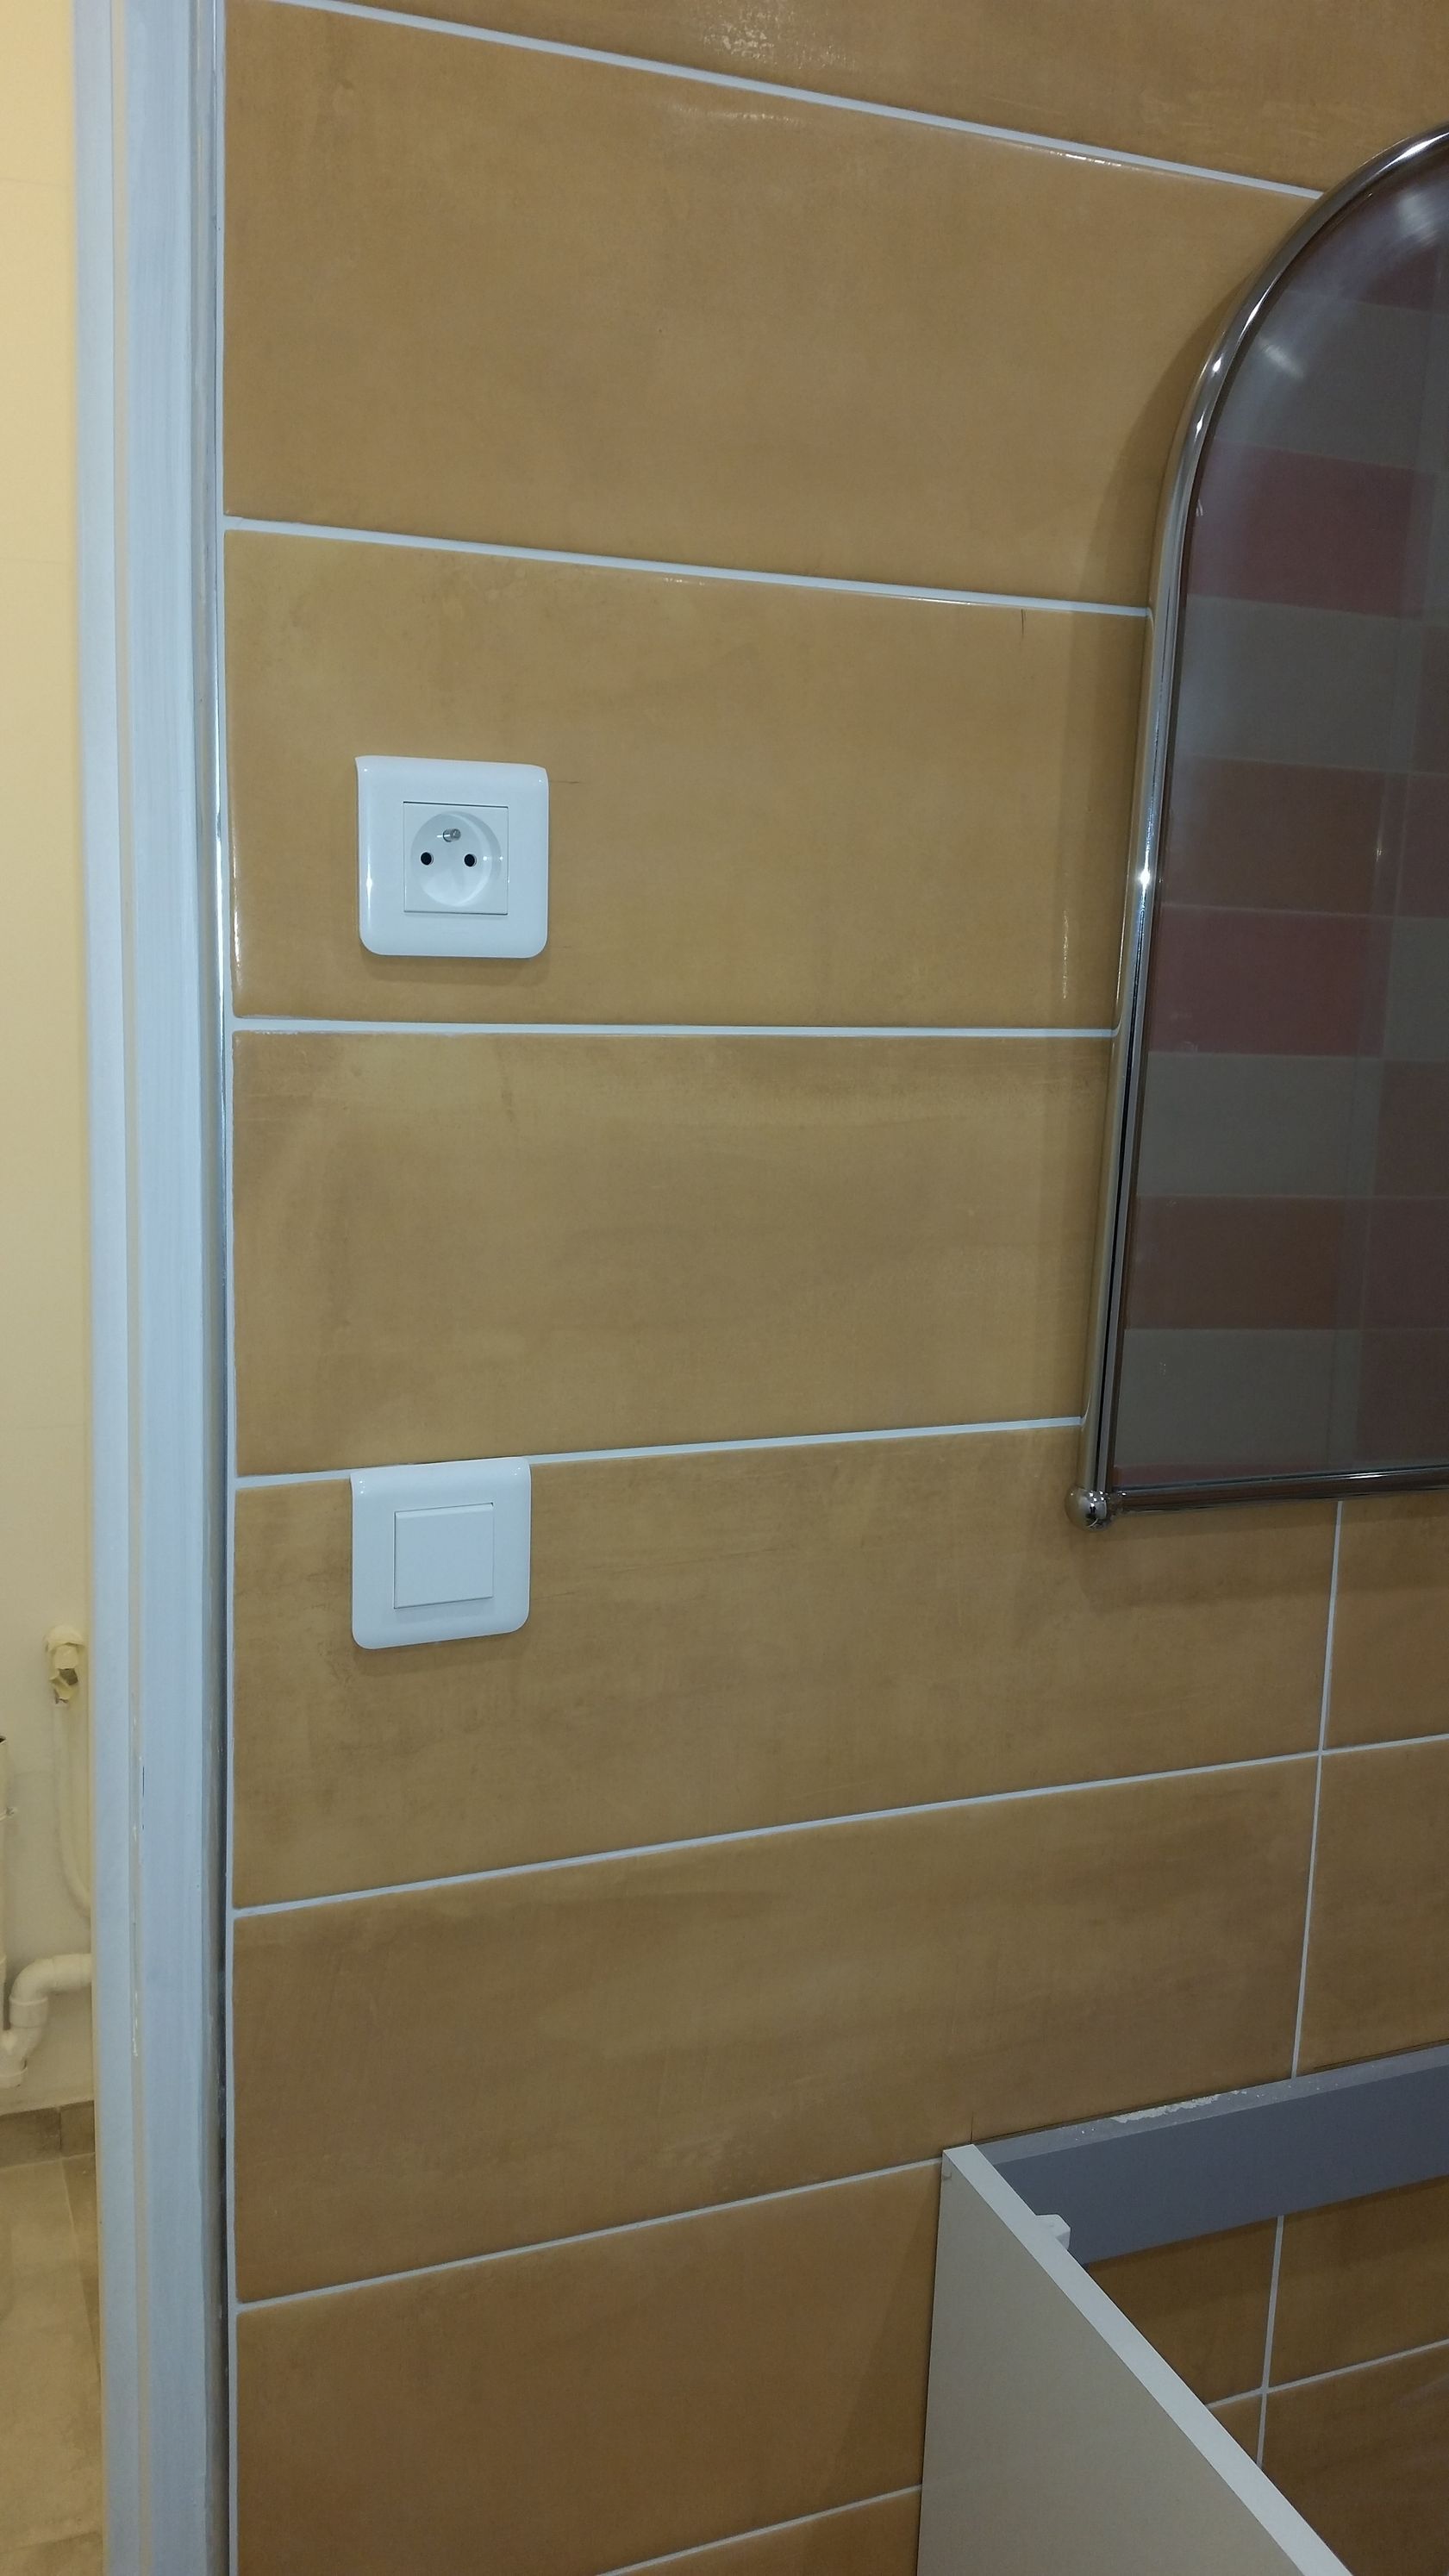 Prises et interrupteurs dans une salle d'eau